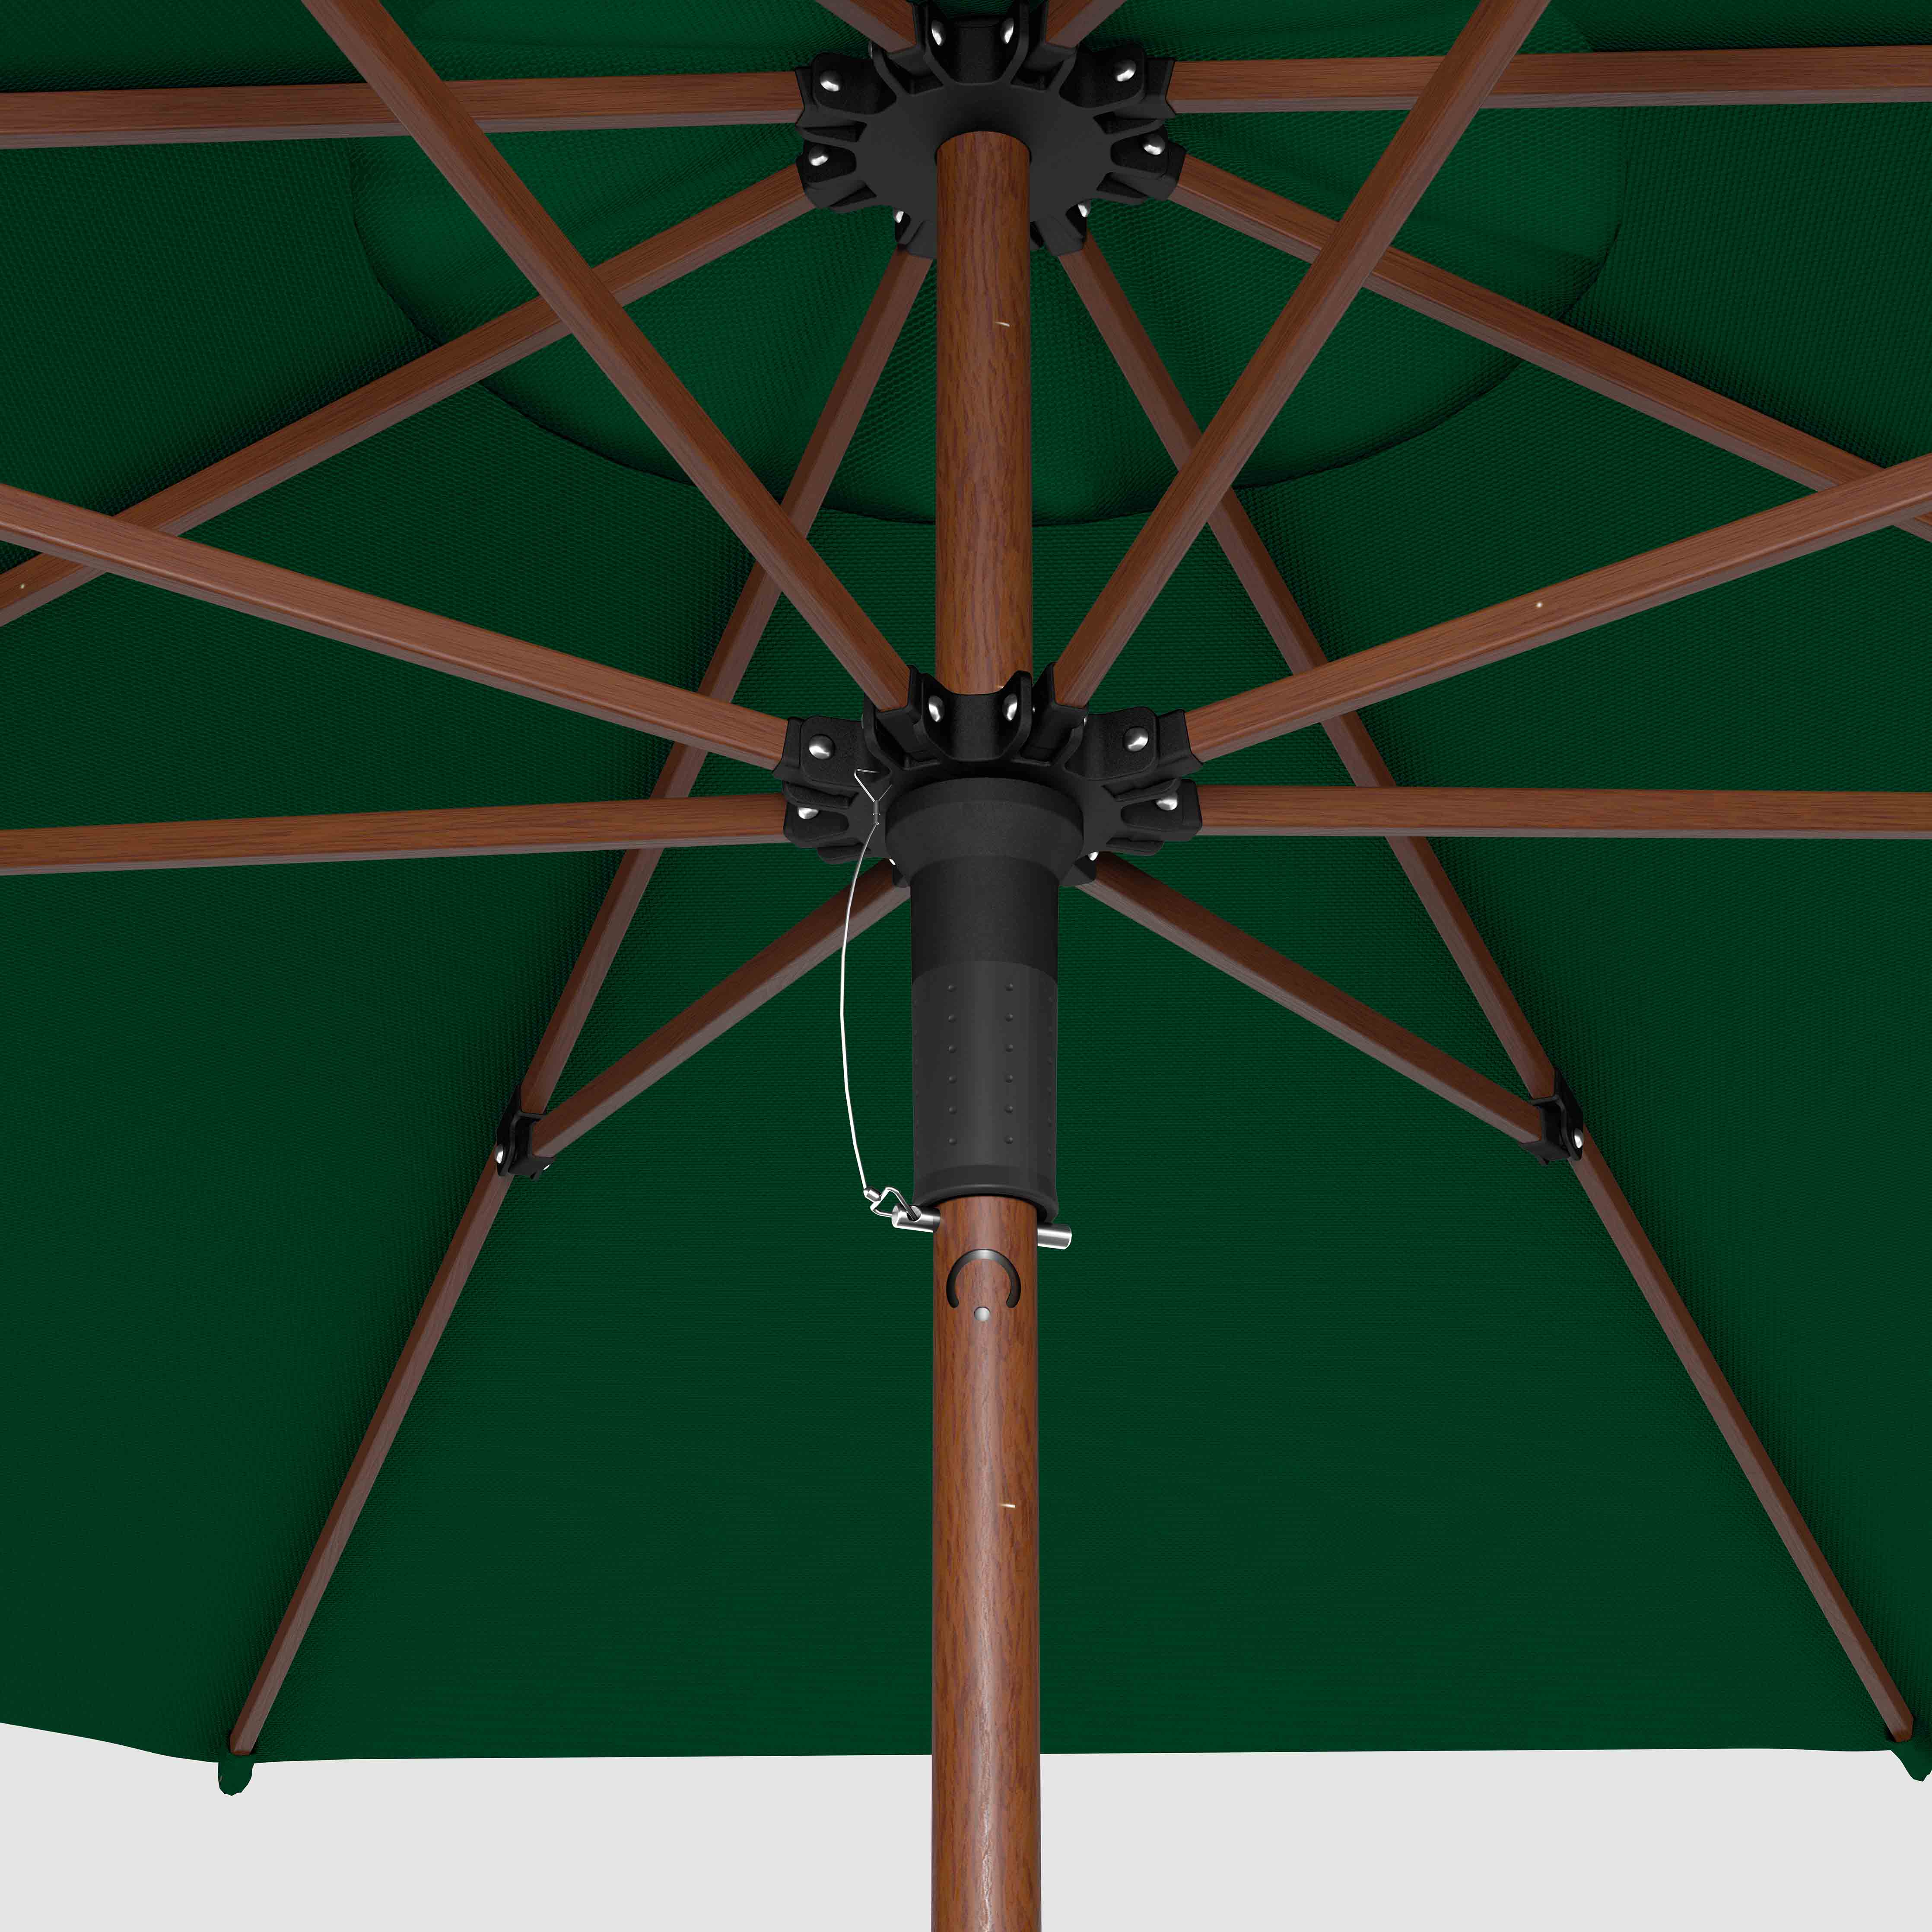 The Wooden™ - Sunbrella Forest Green